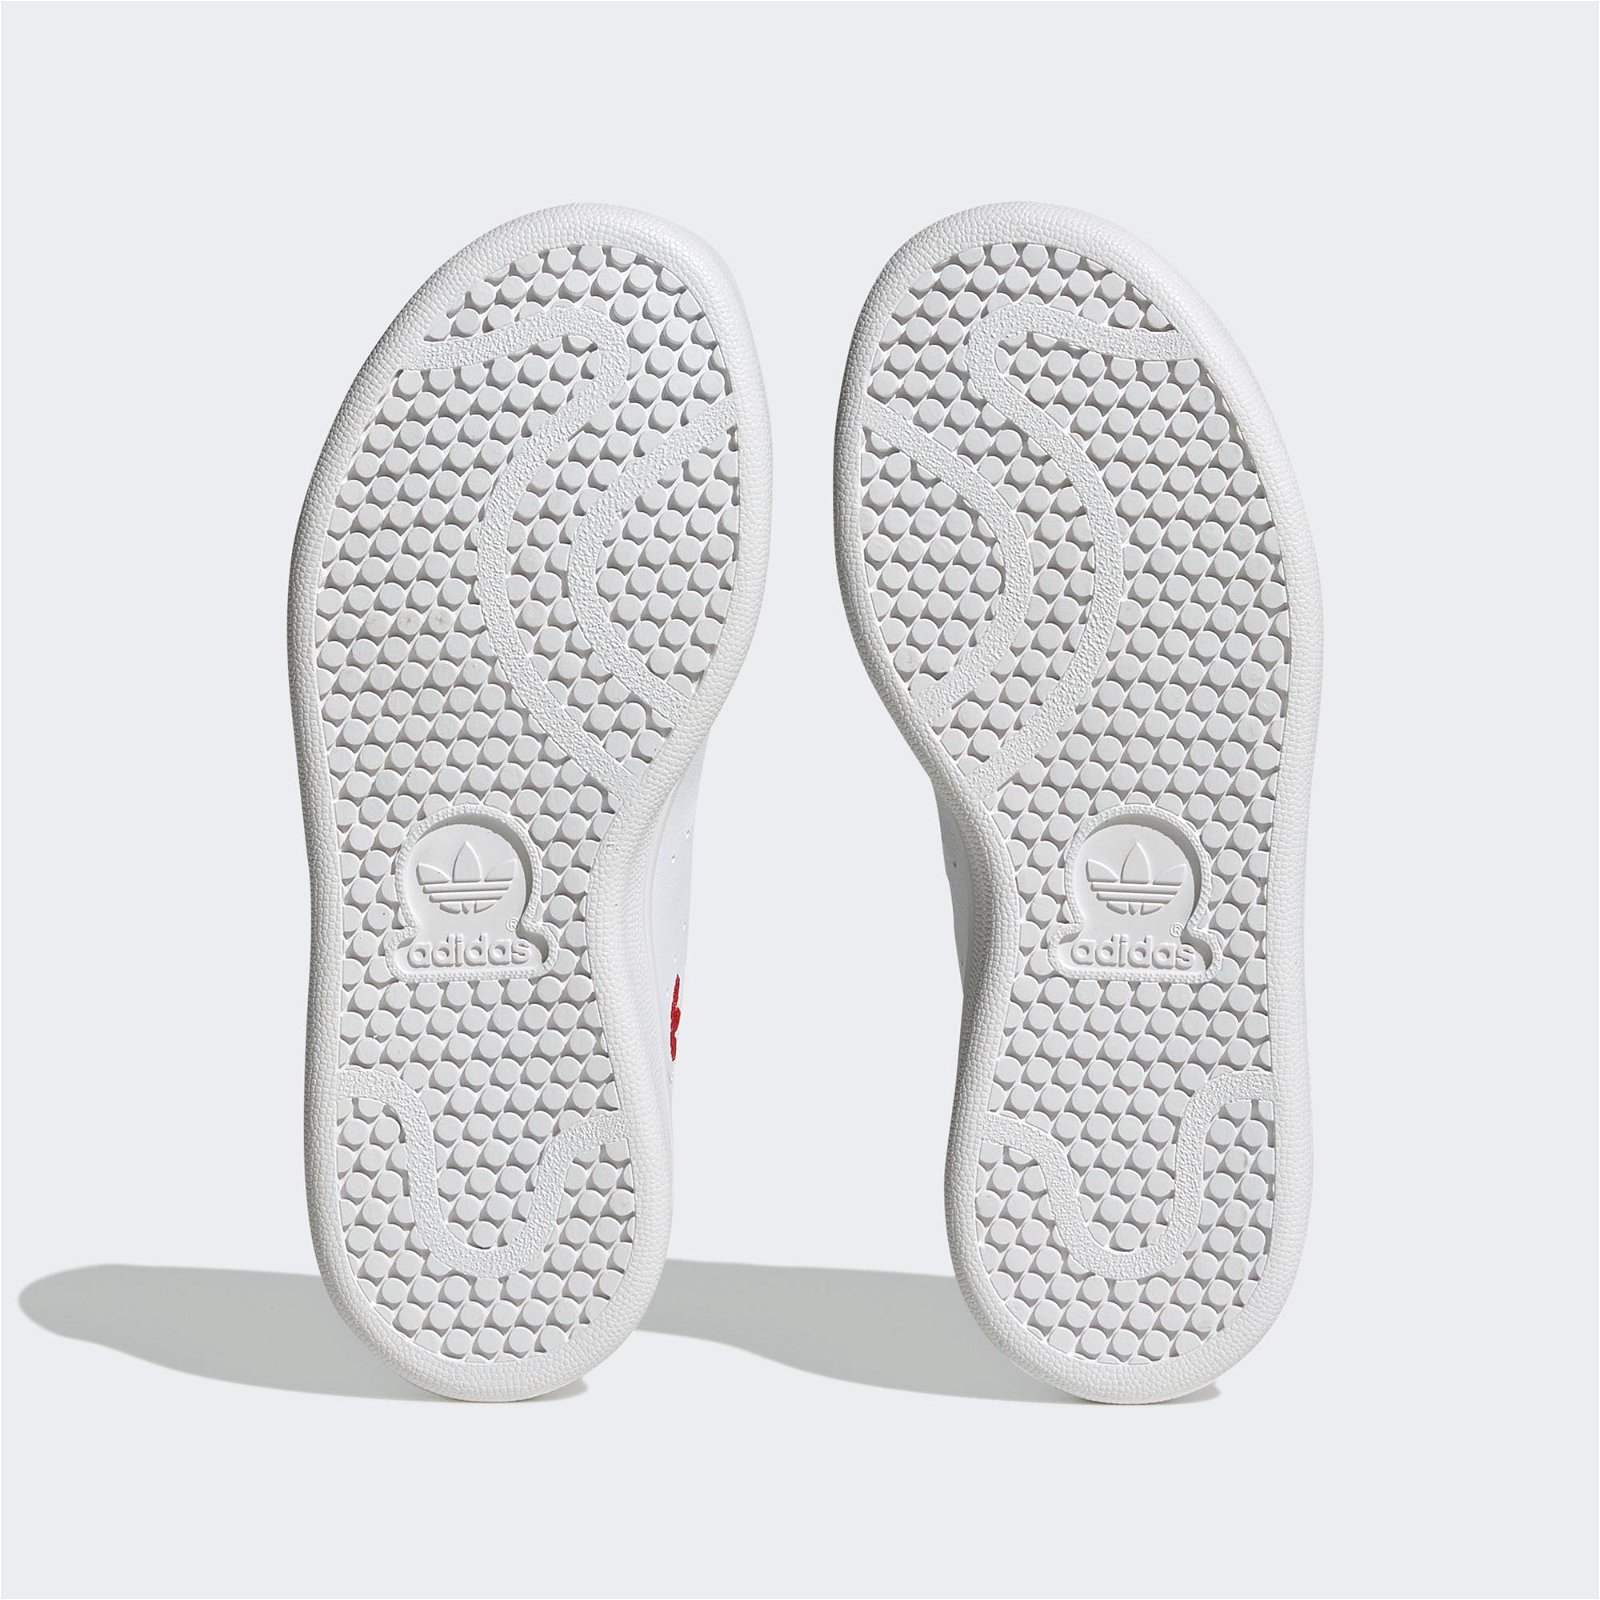 adidas Stan Smith Çocuk Beyaz-Kırmızı Spor Ayakkabı